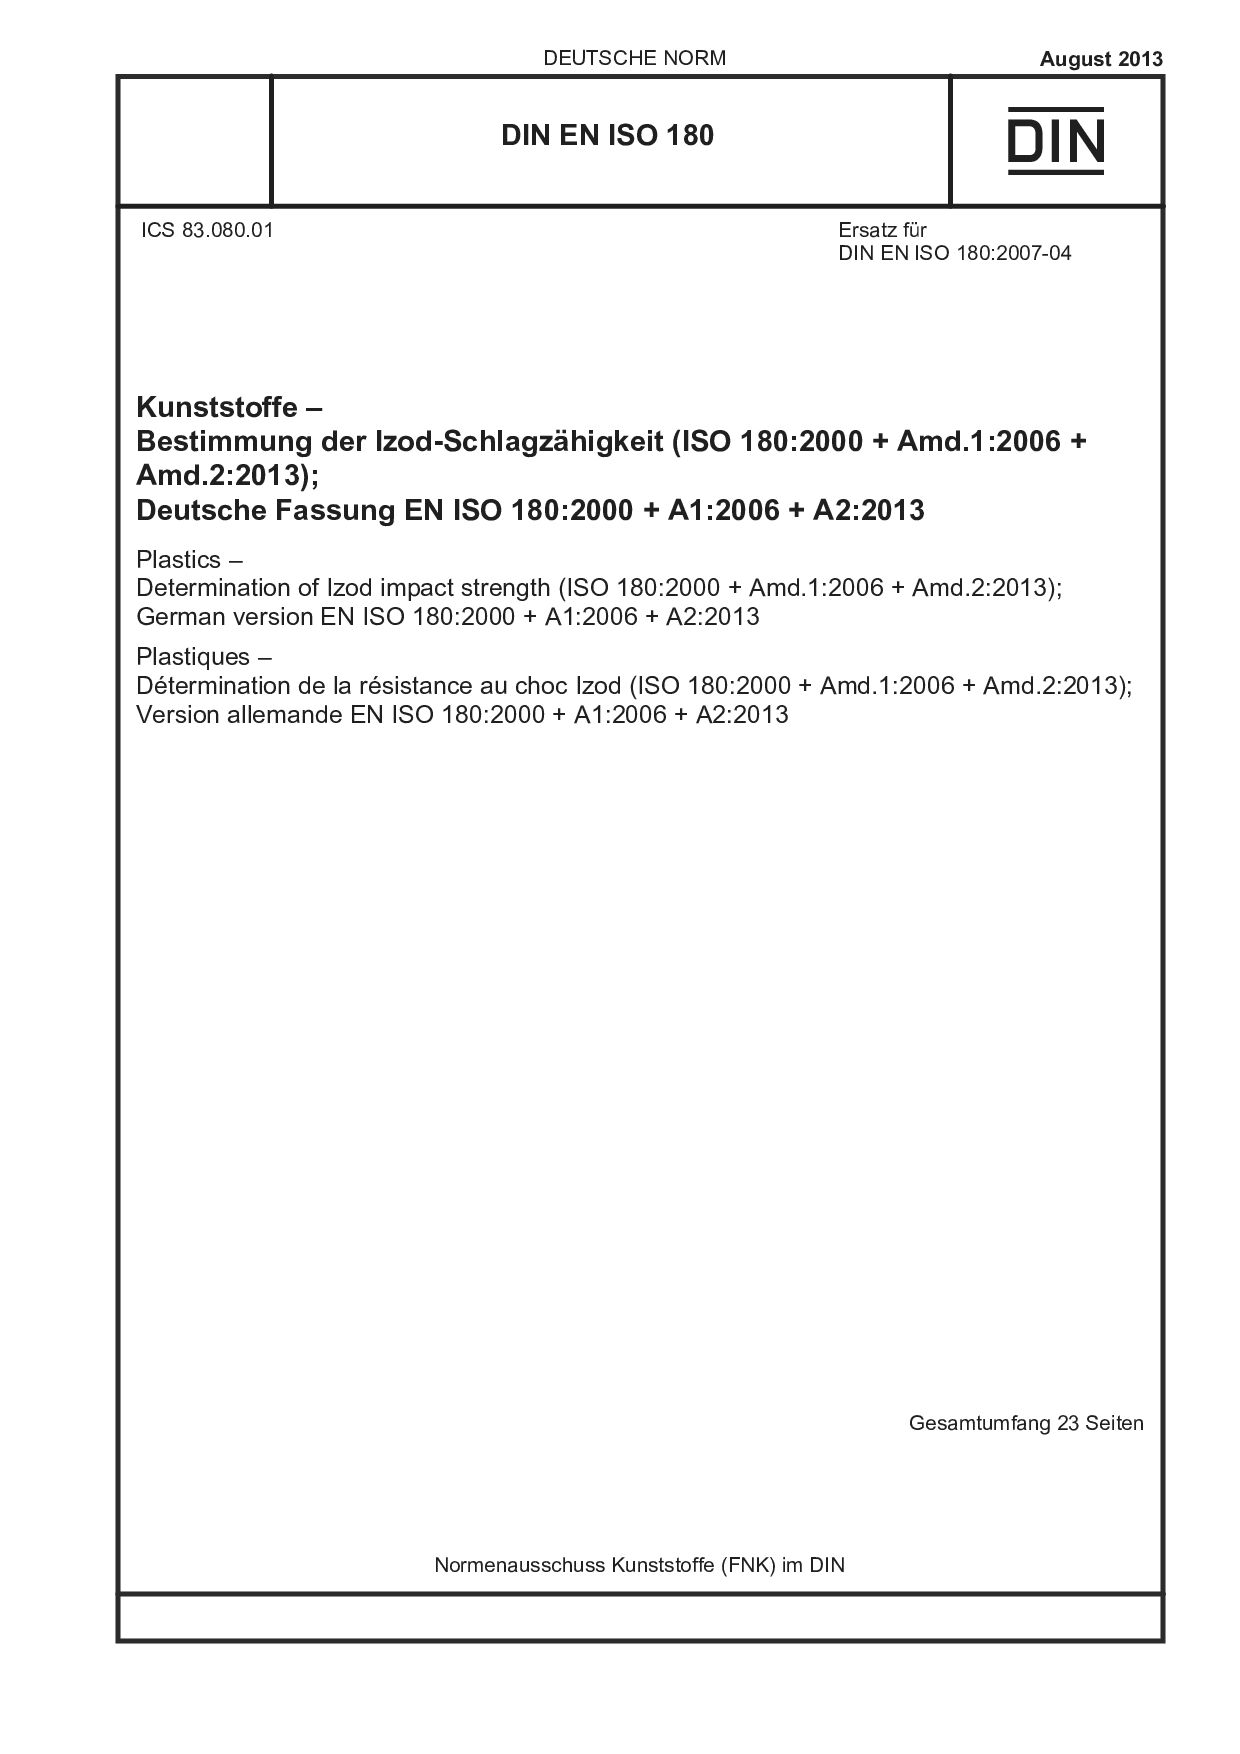 DIN EN ISO 180:2013封面图